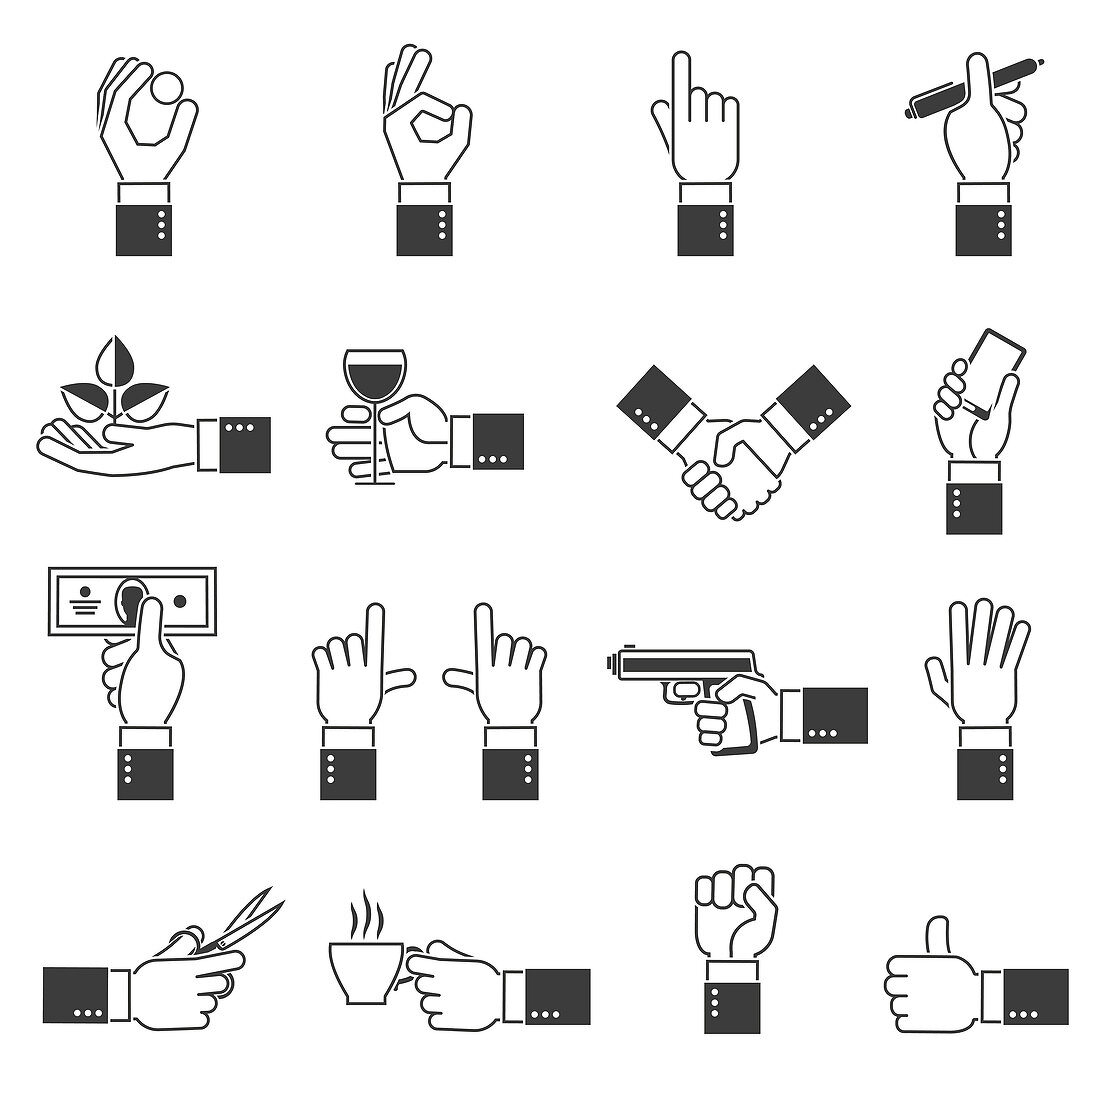 Hand icons, illustration